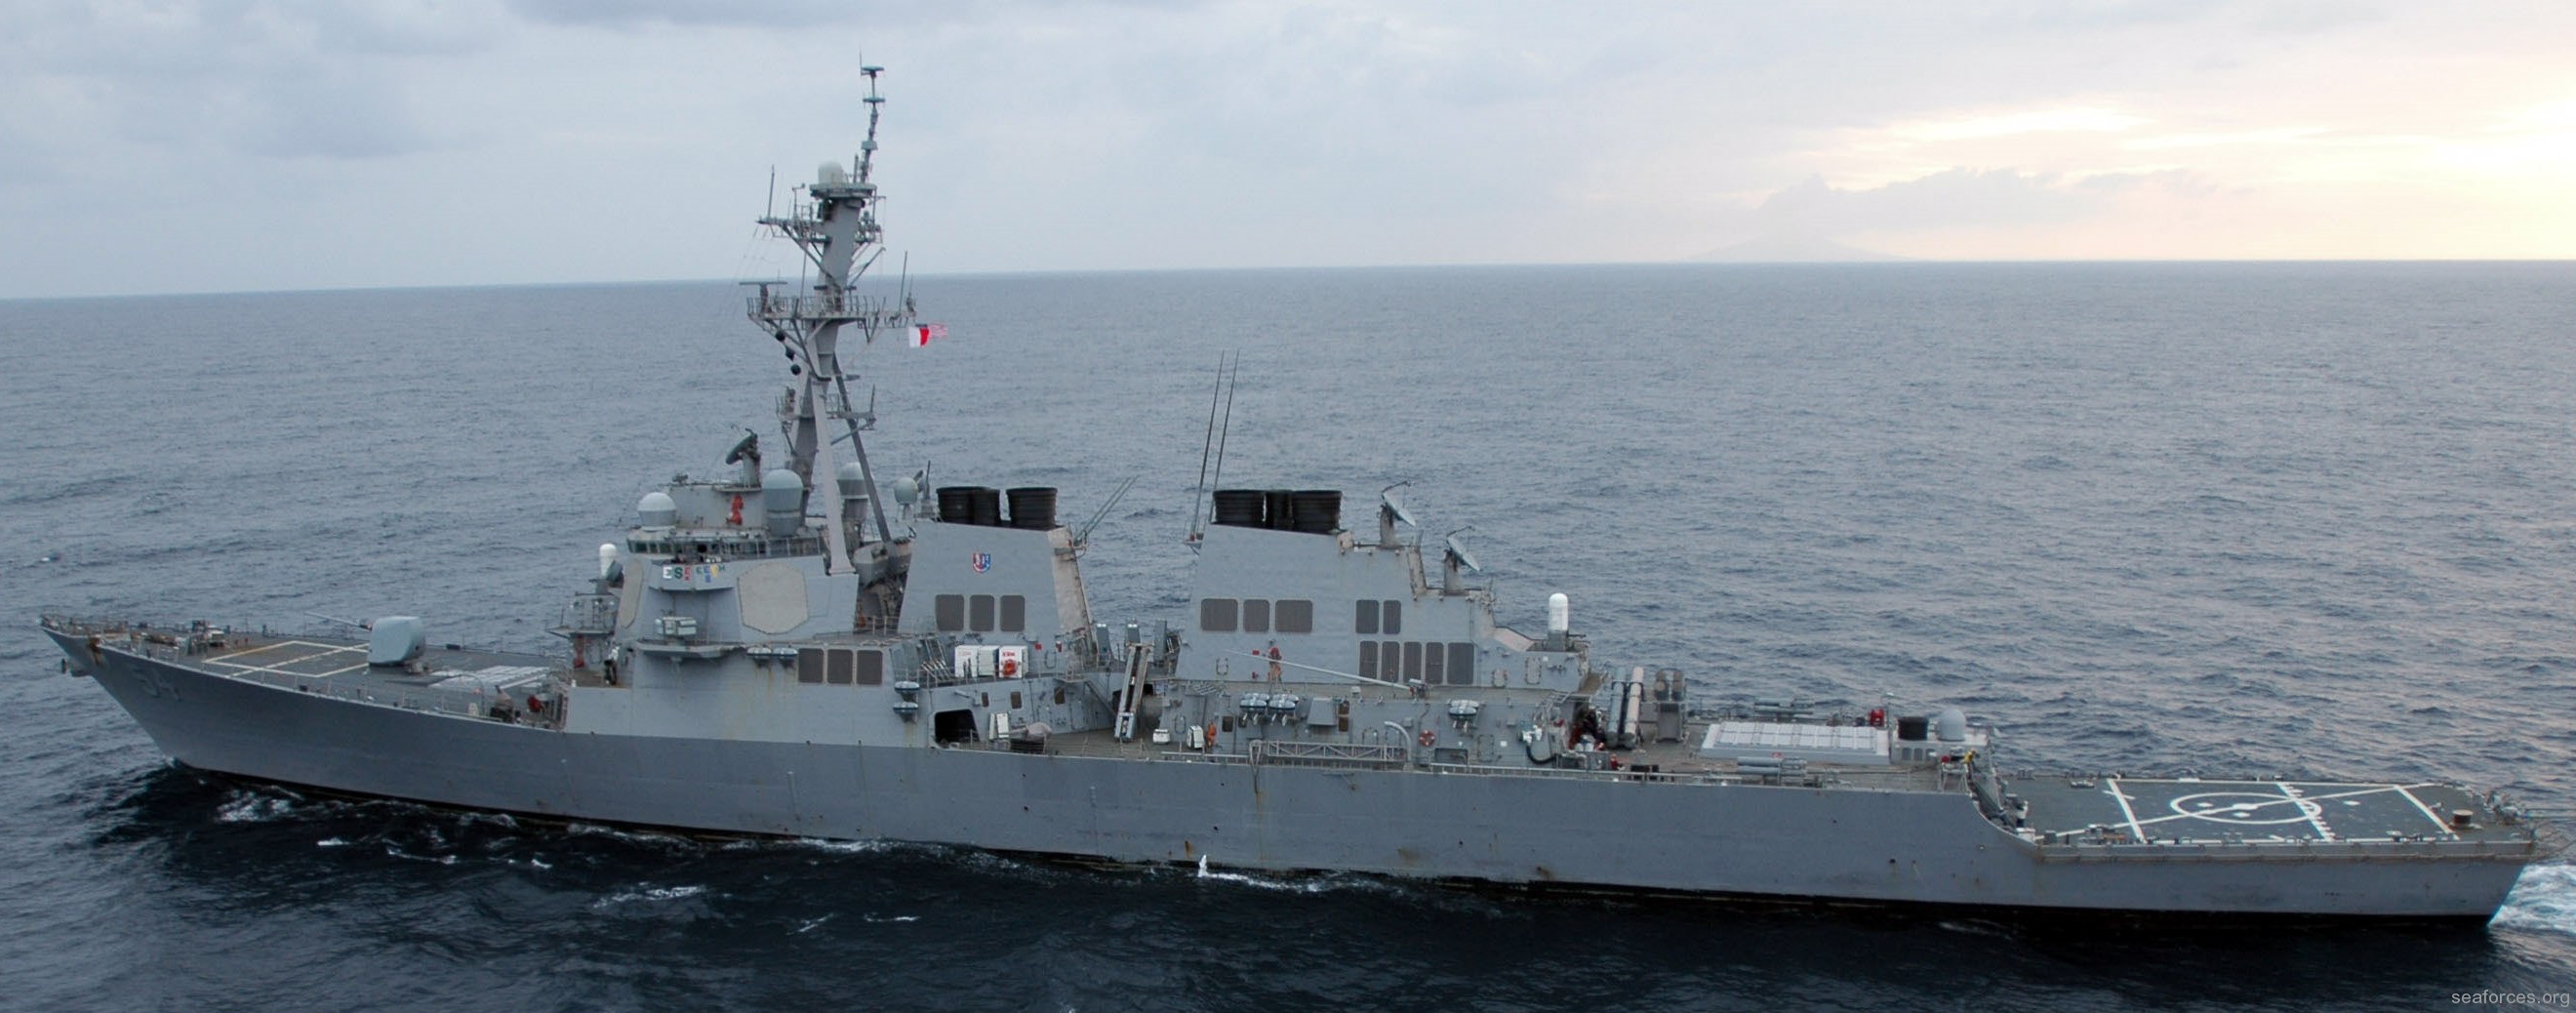 ddg-54 uss curtis wilbur destroyer us navy 69